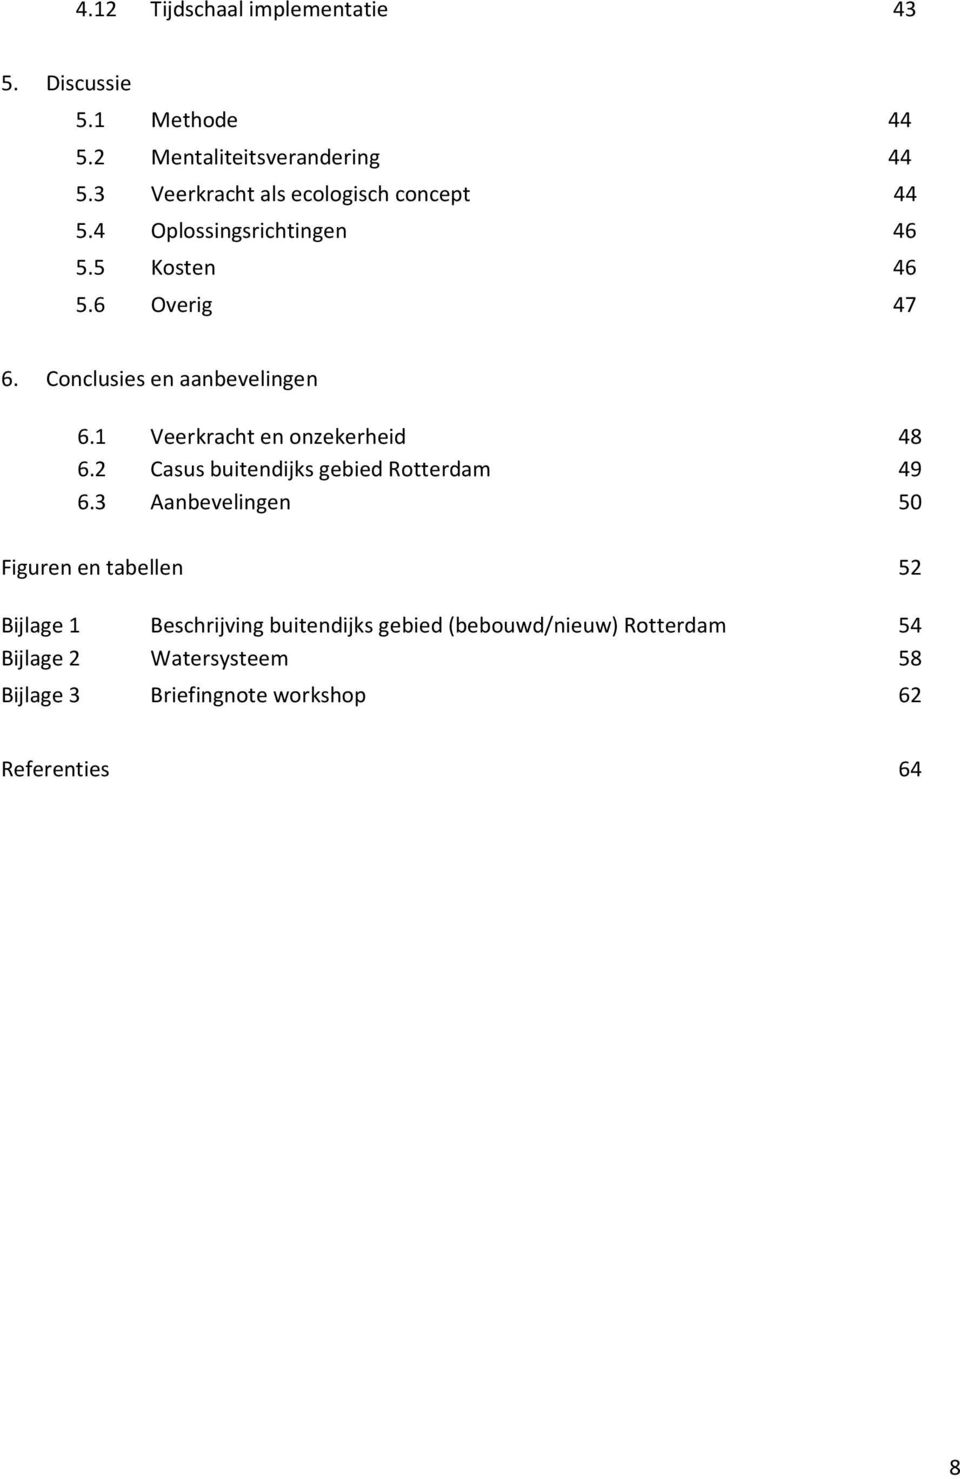 Conclusies en aanbevelingen 6.1 Veerkracht en onzekerheid 48 6.2 Casus buitendijks gebied Rotterdam 49 6.